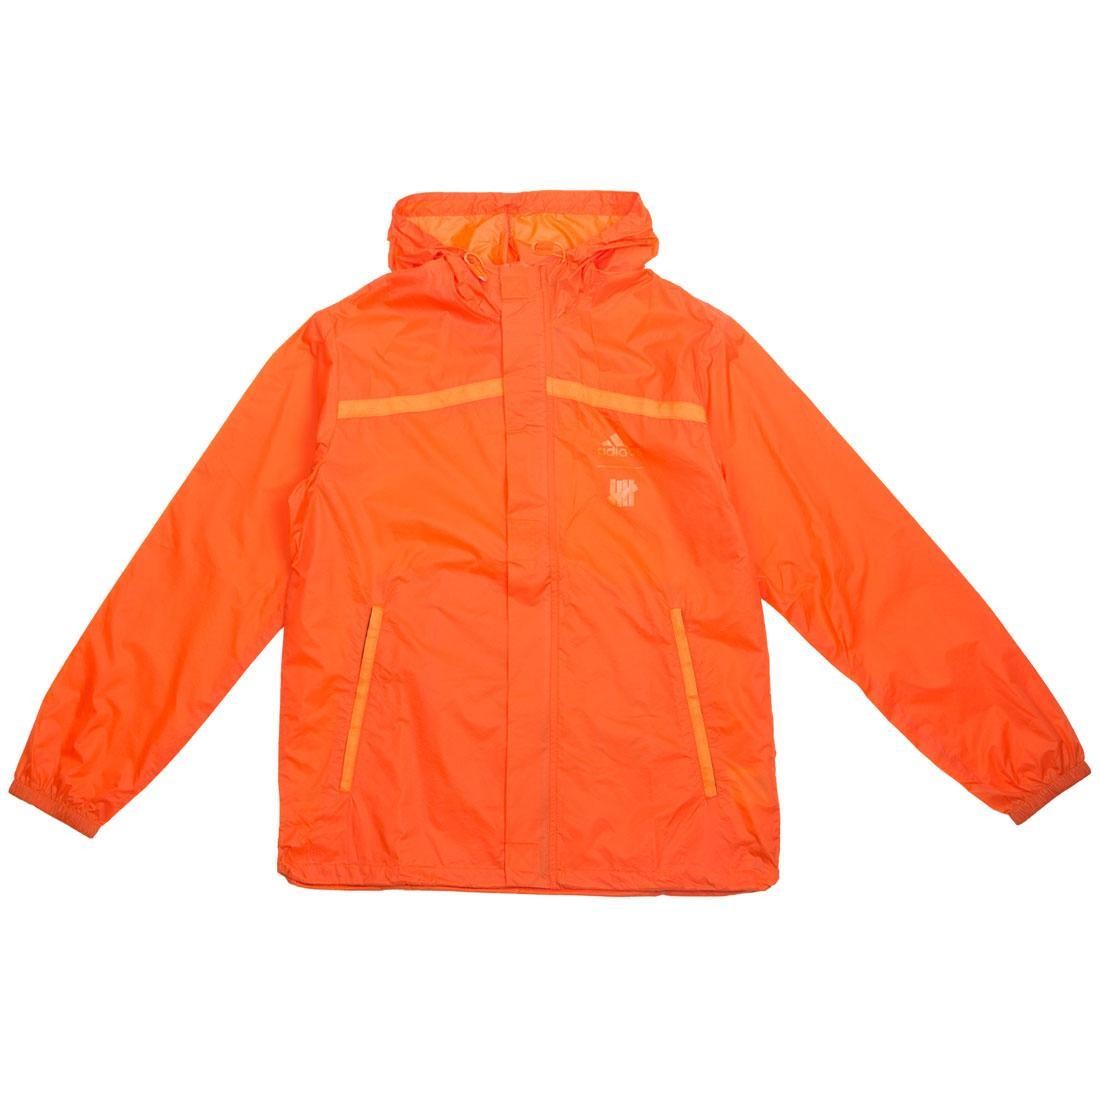 Adidas x Undefeated Men Pack Jacket orange